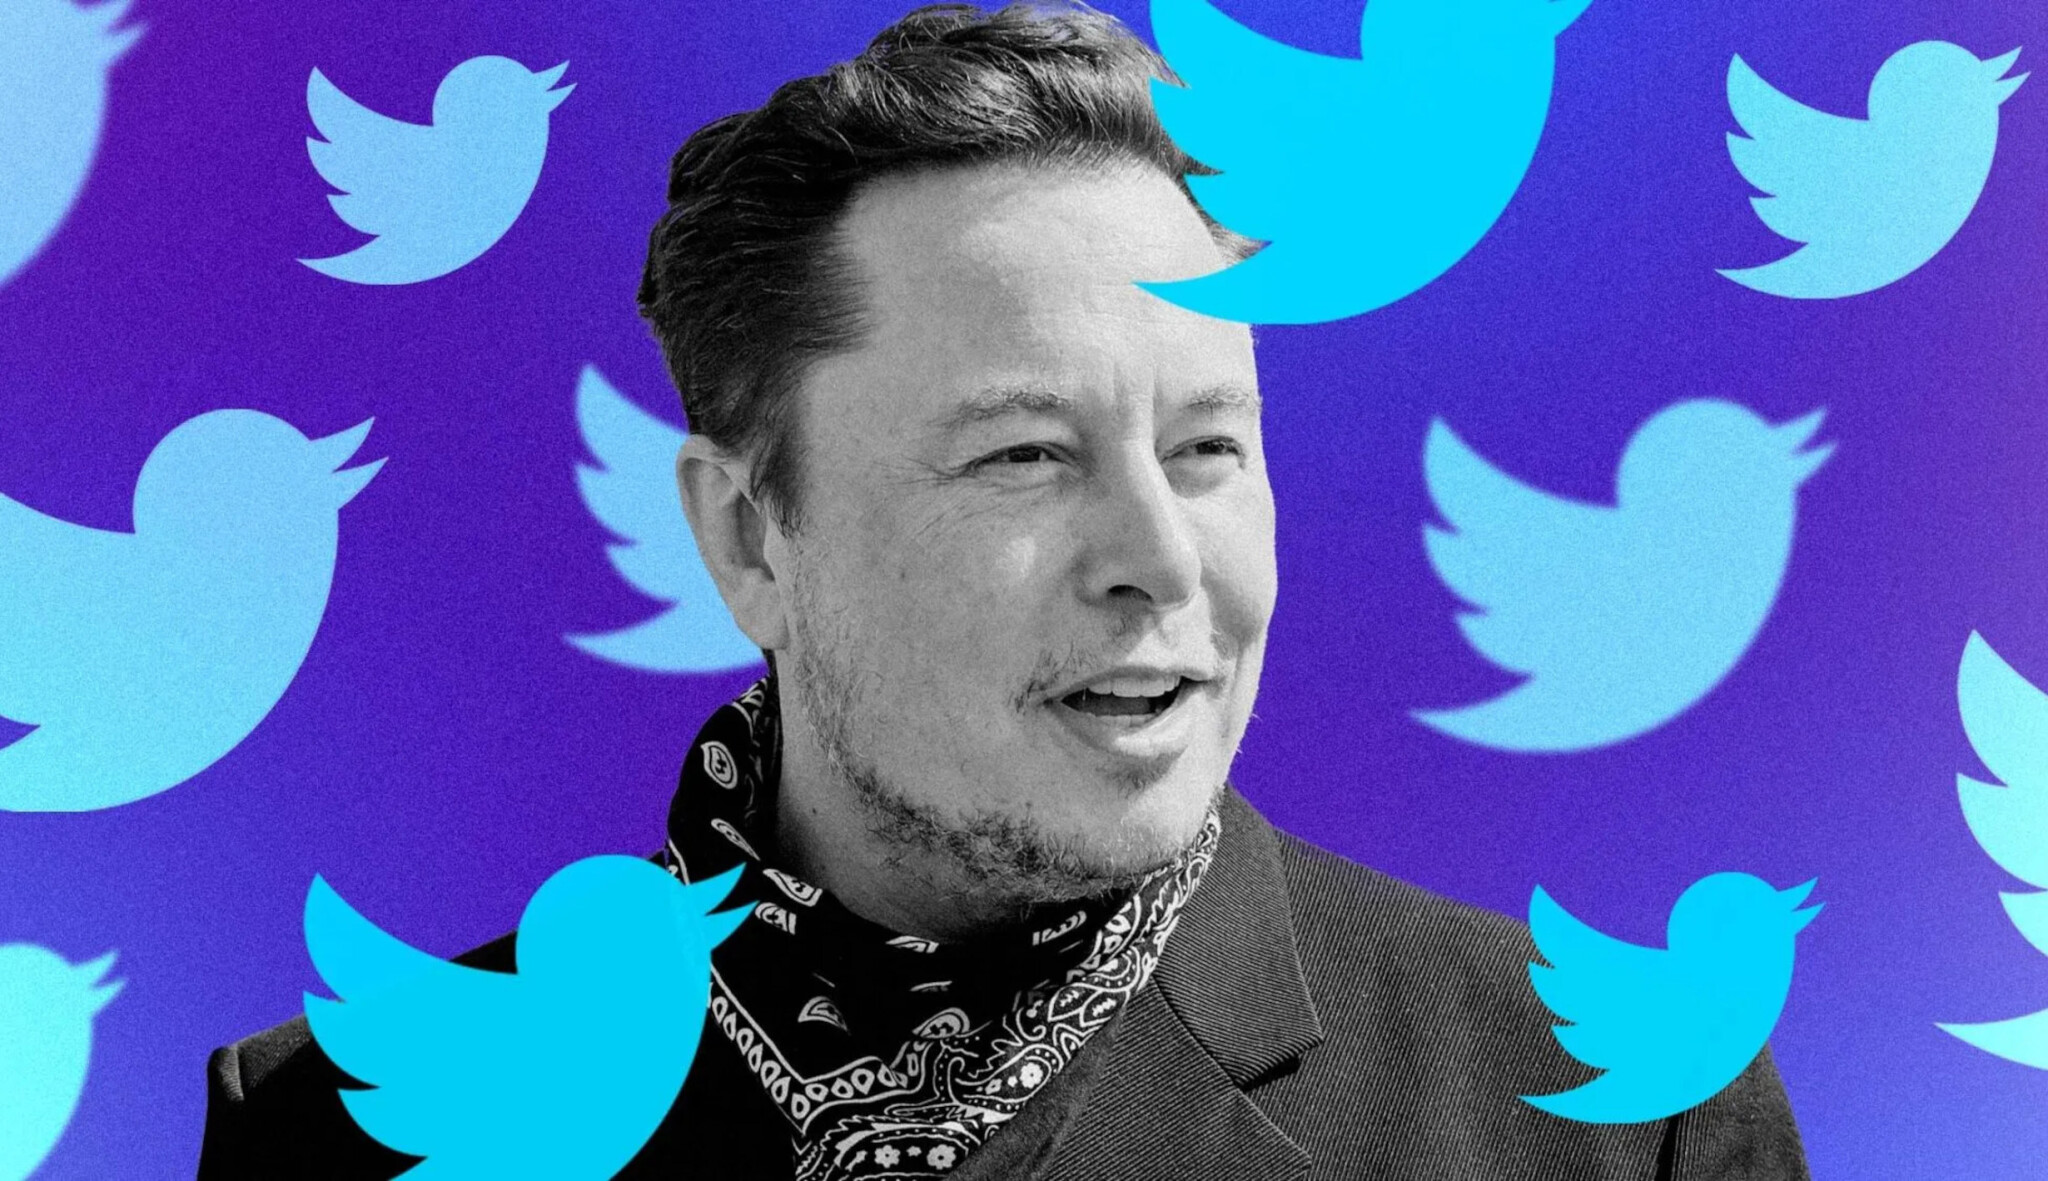 Ne až tak svobodný Twitter? Elon Musk vyhověl více než 80 procentům žádostí o cenzuru